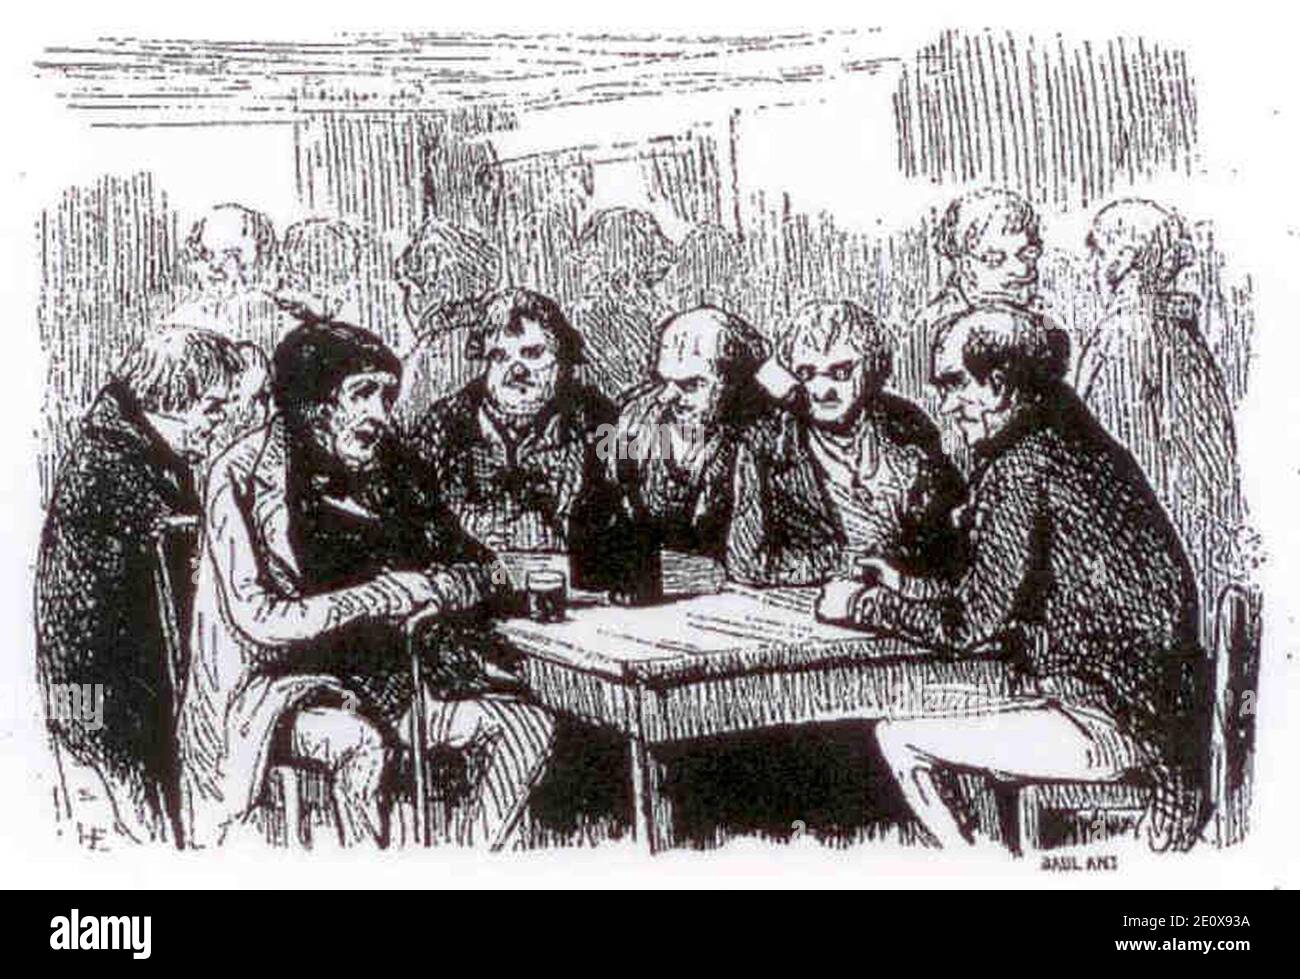 Les Joyeux en 1844-2. Stock Photo